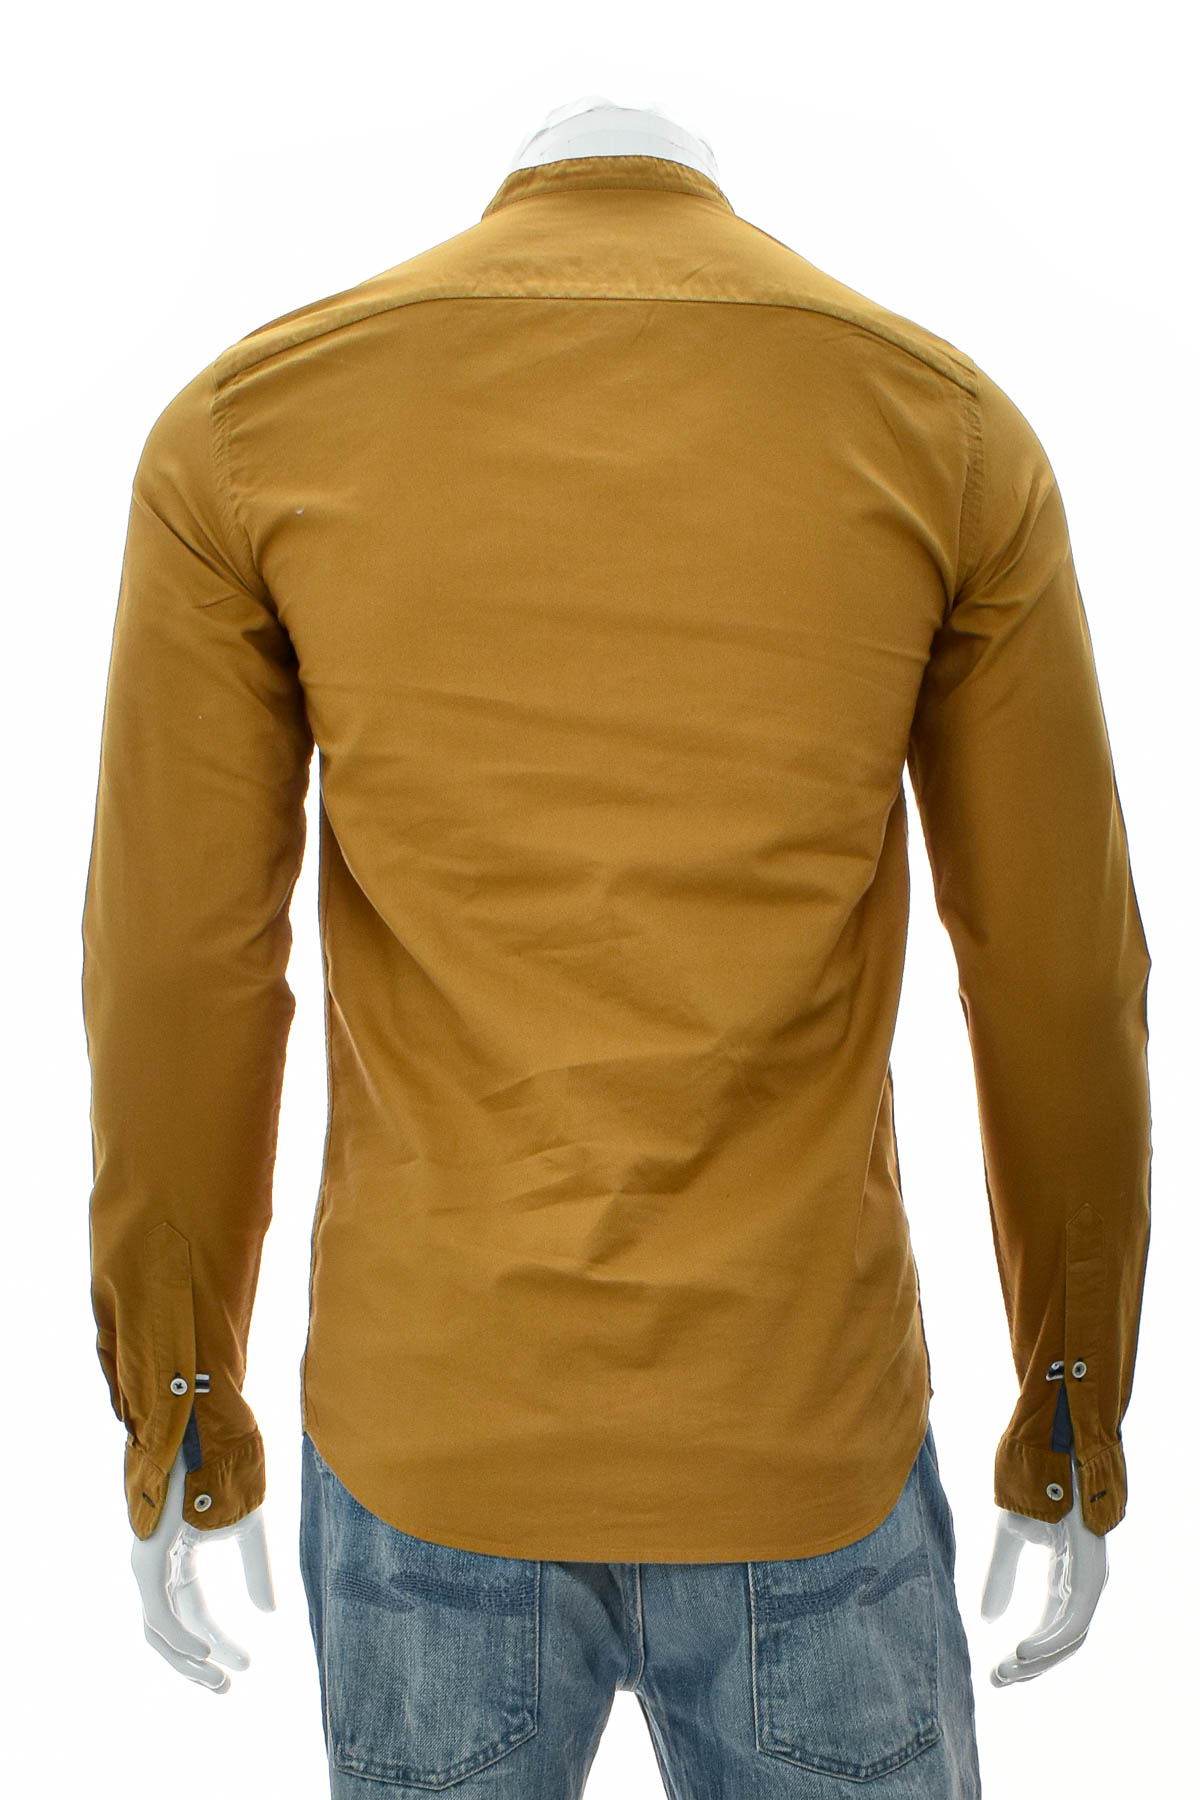 Ανδρικό πουκάμισο - ZARA Man - 1